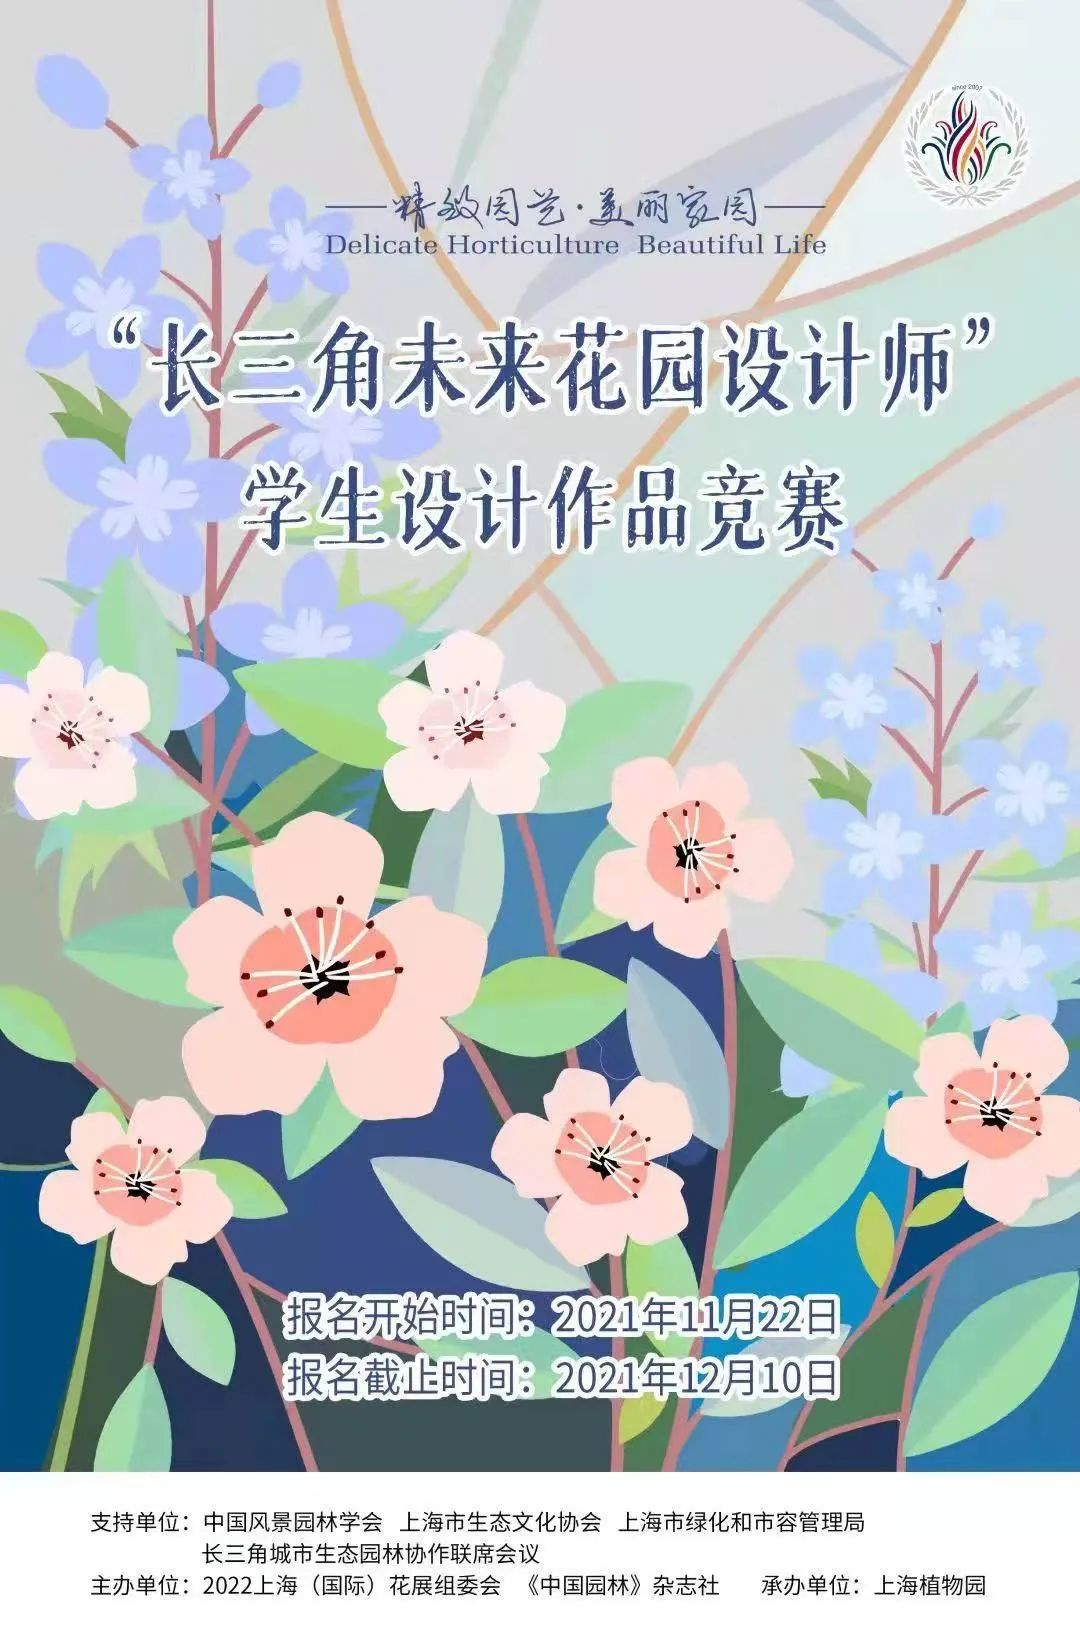 22上海 国际 花展 长三角未来花园设计师 学生设计作品竞赛获奖名单及获奖作品 Cnyisai艺赛中国